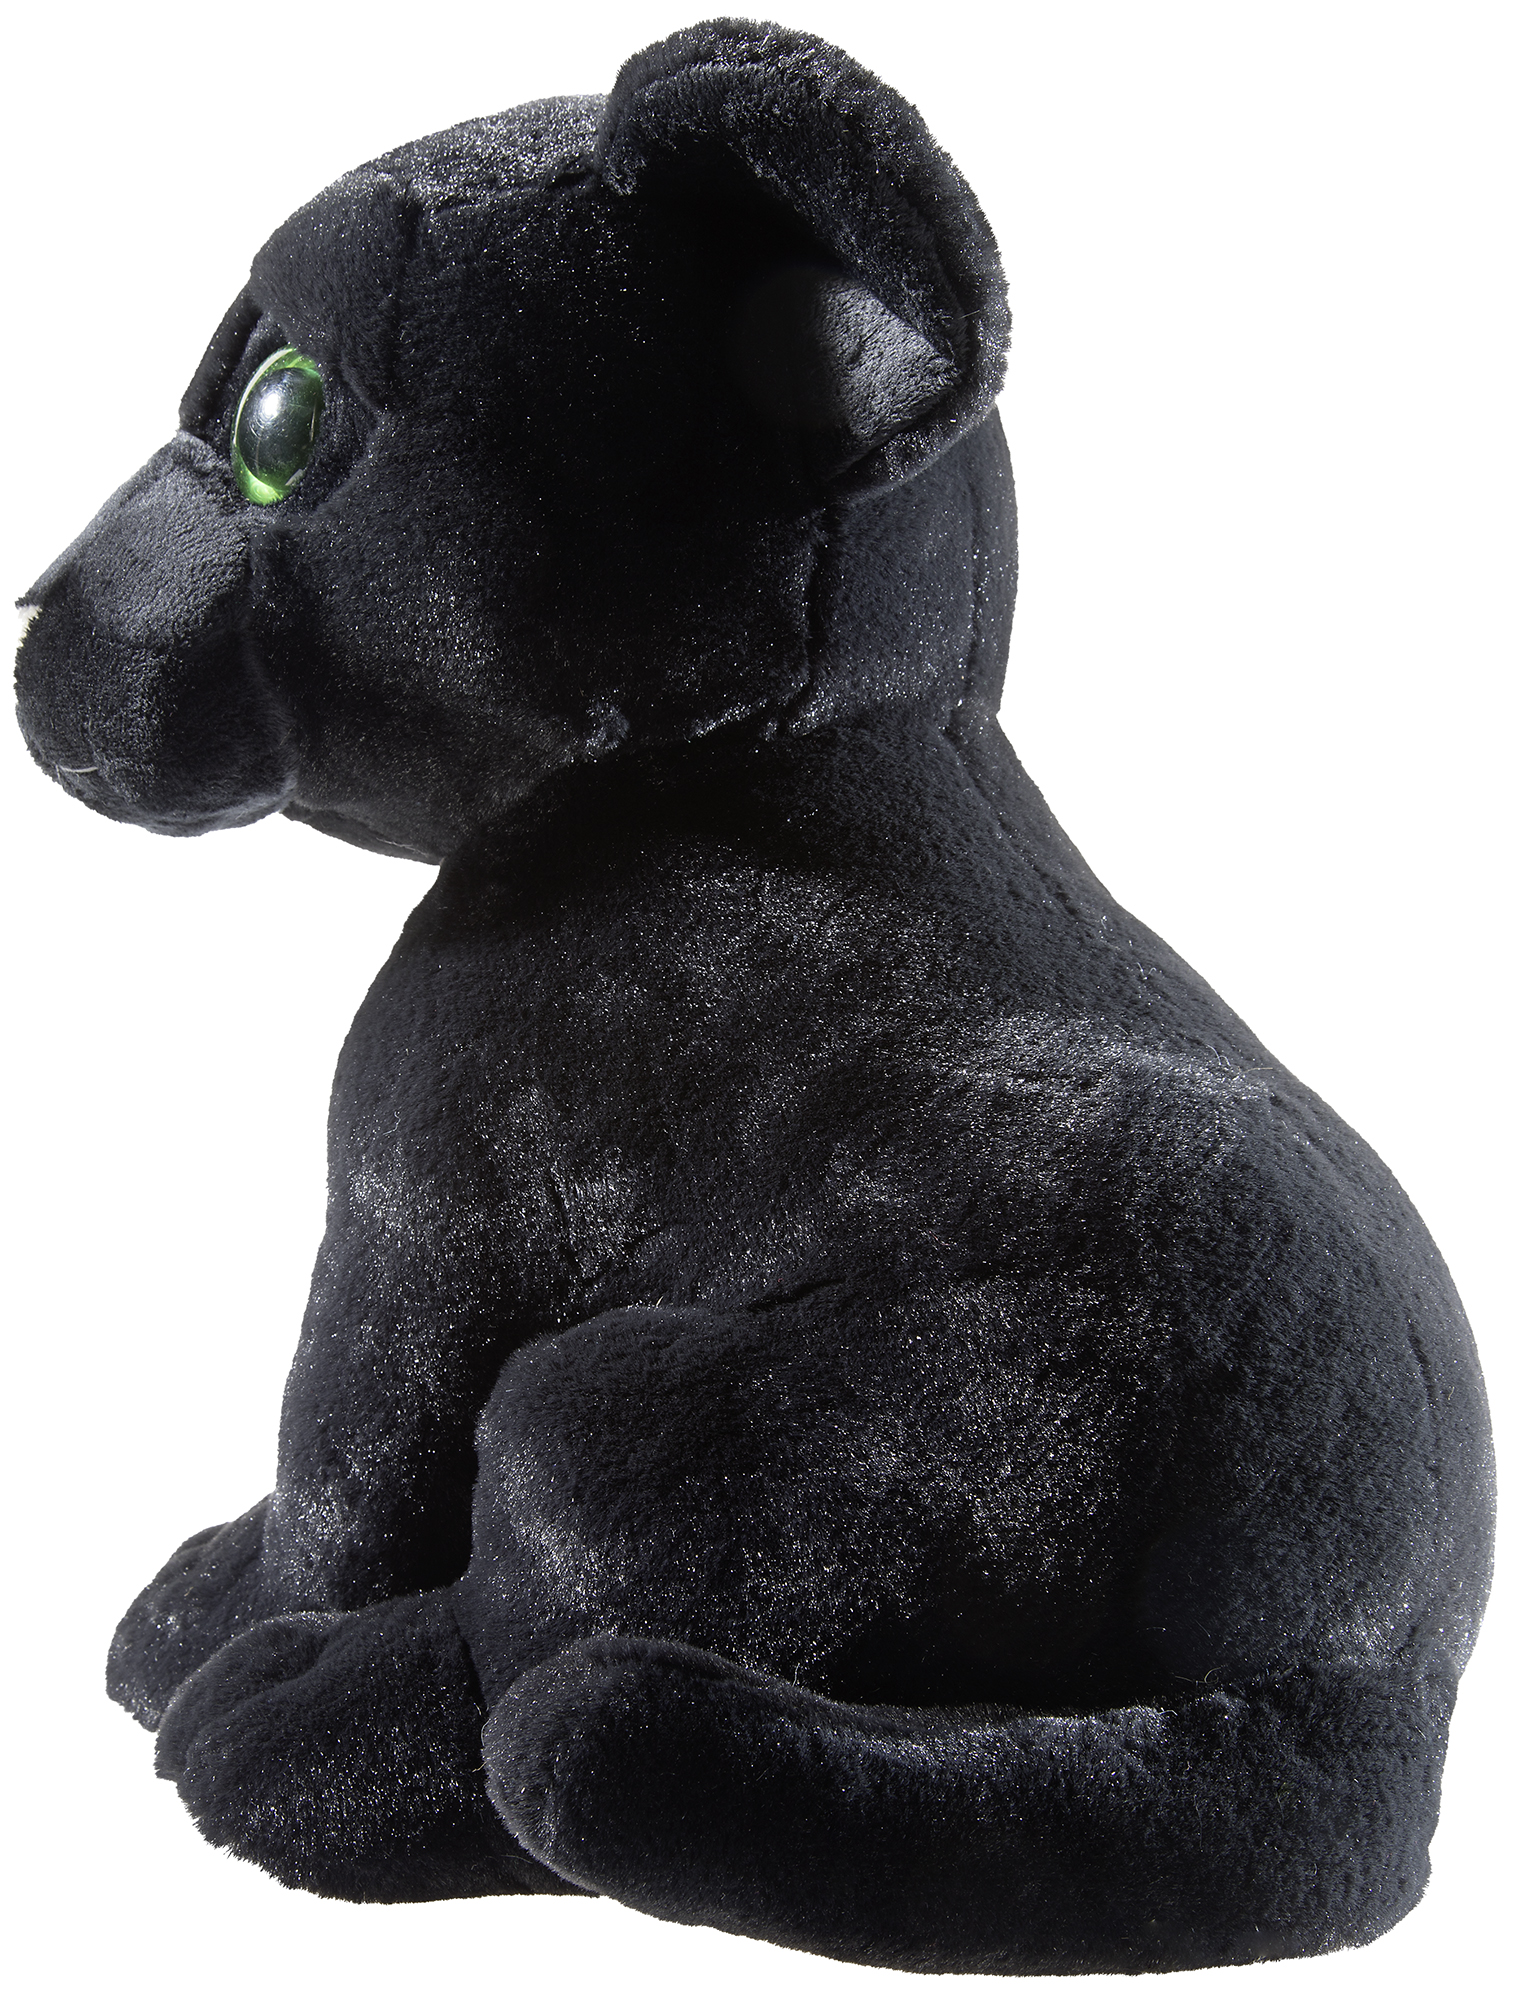 Heunec Panther sitzend in schwarz in 45cm Größe - Detailbild Seite